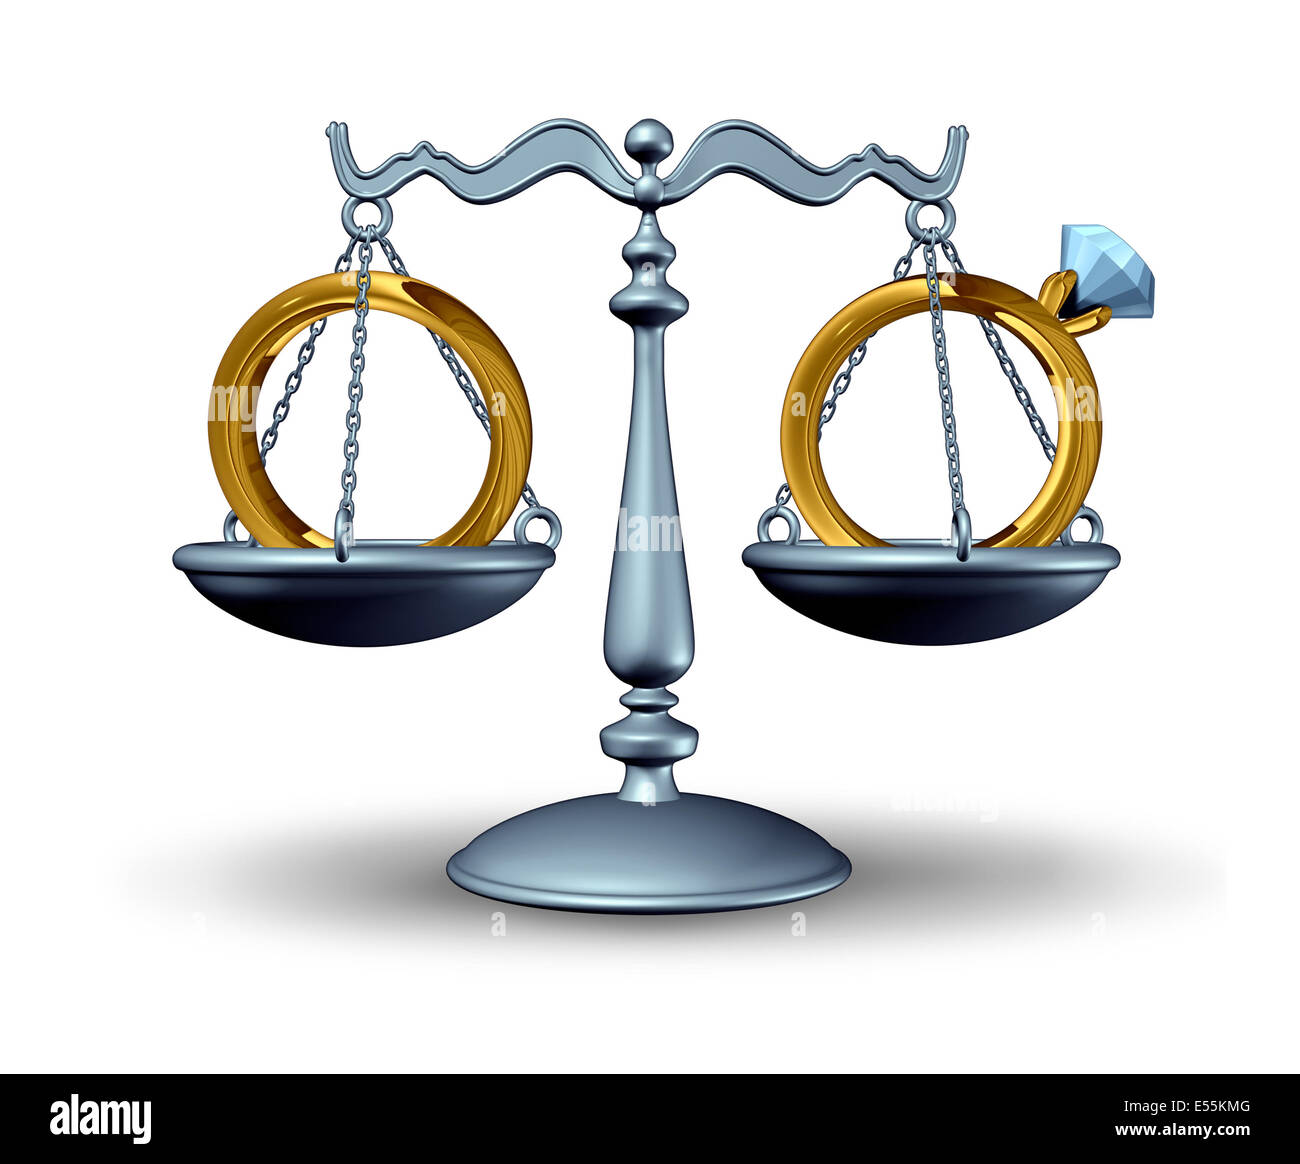 Accordo prematrimoniali e la legge sul divorzio concetto come una scala di giustizia con gli anelli di nozze come un simbolo di un rapporto contrattuale prima di un matrimonio o unione civile o divorciar. Foto Stock